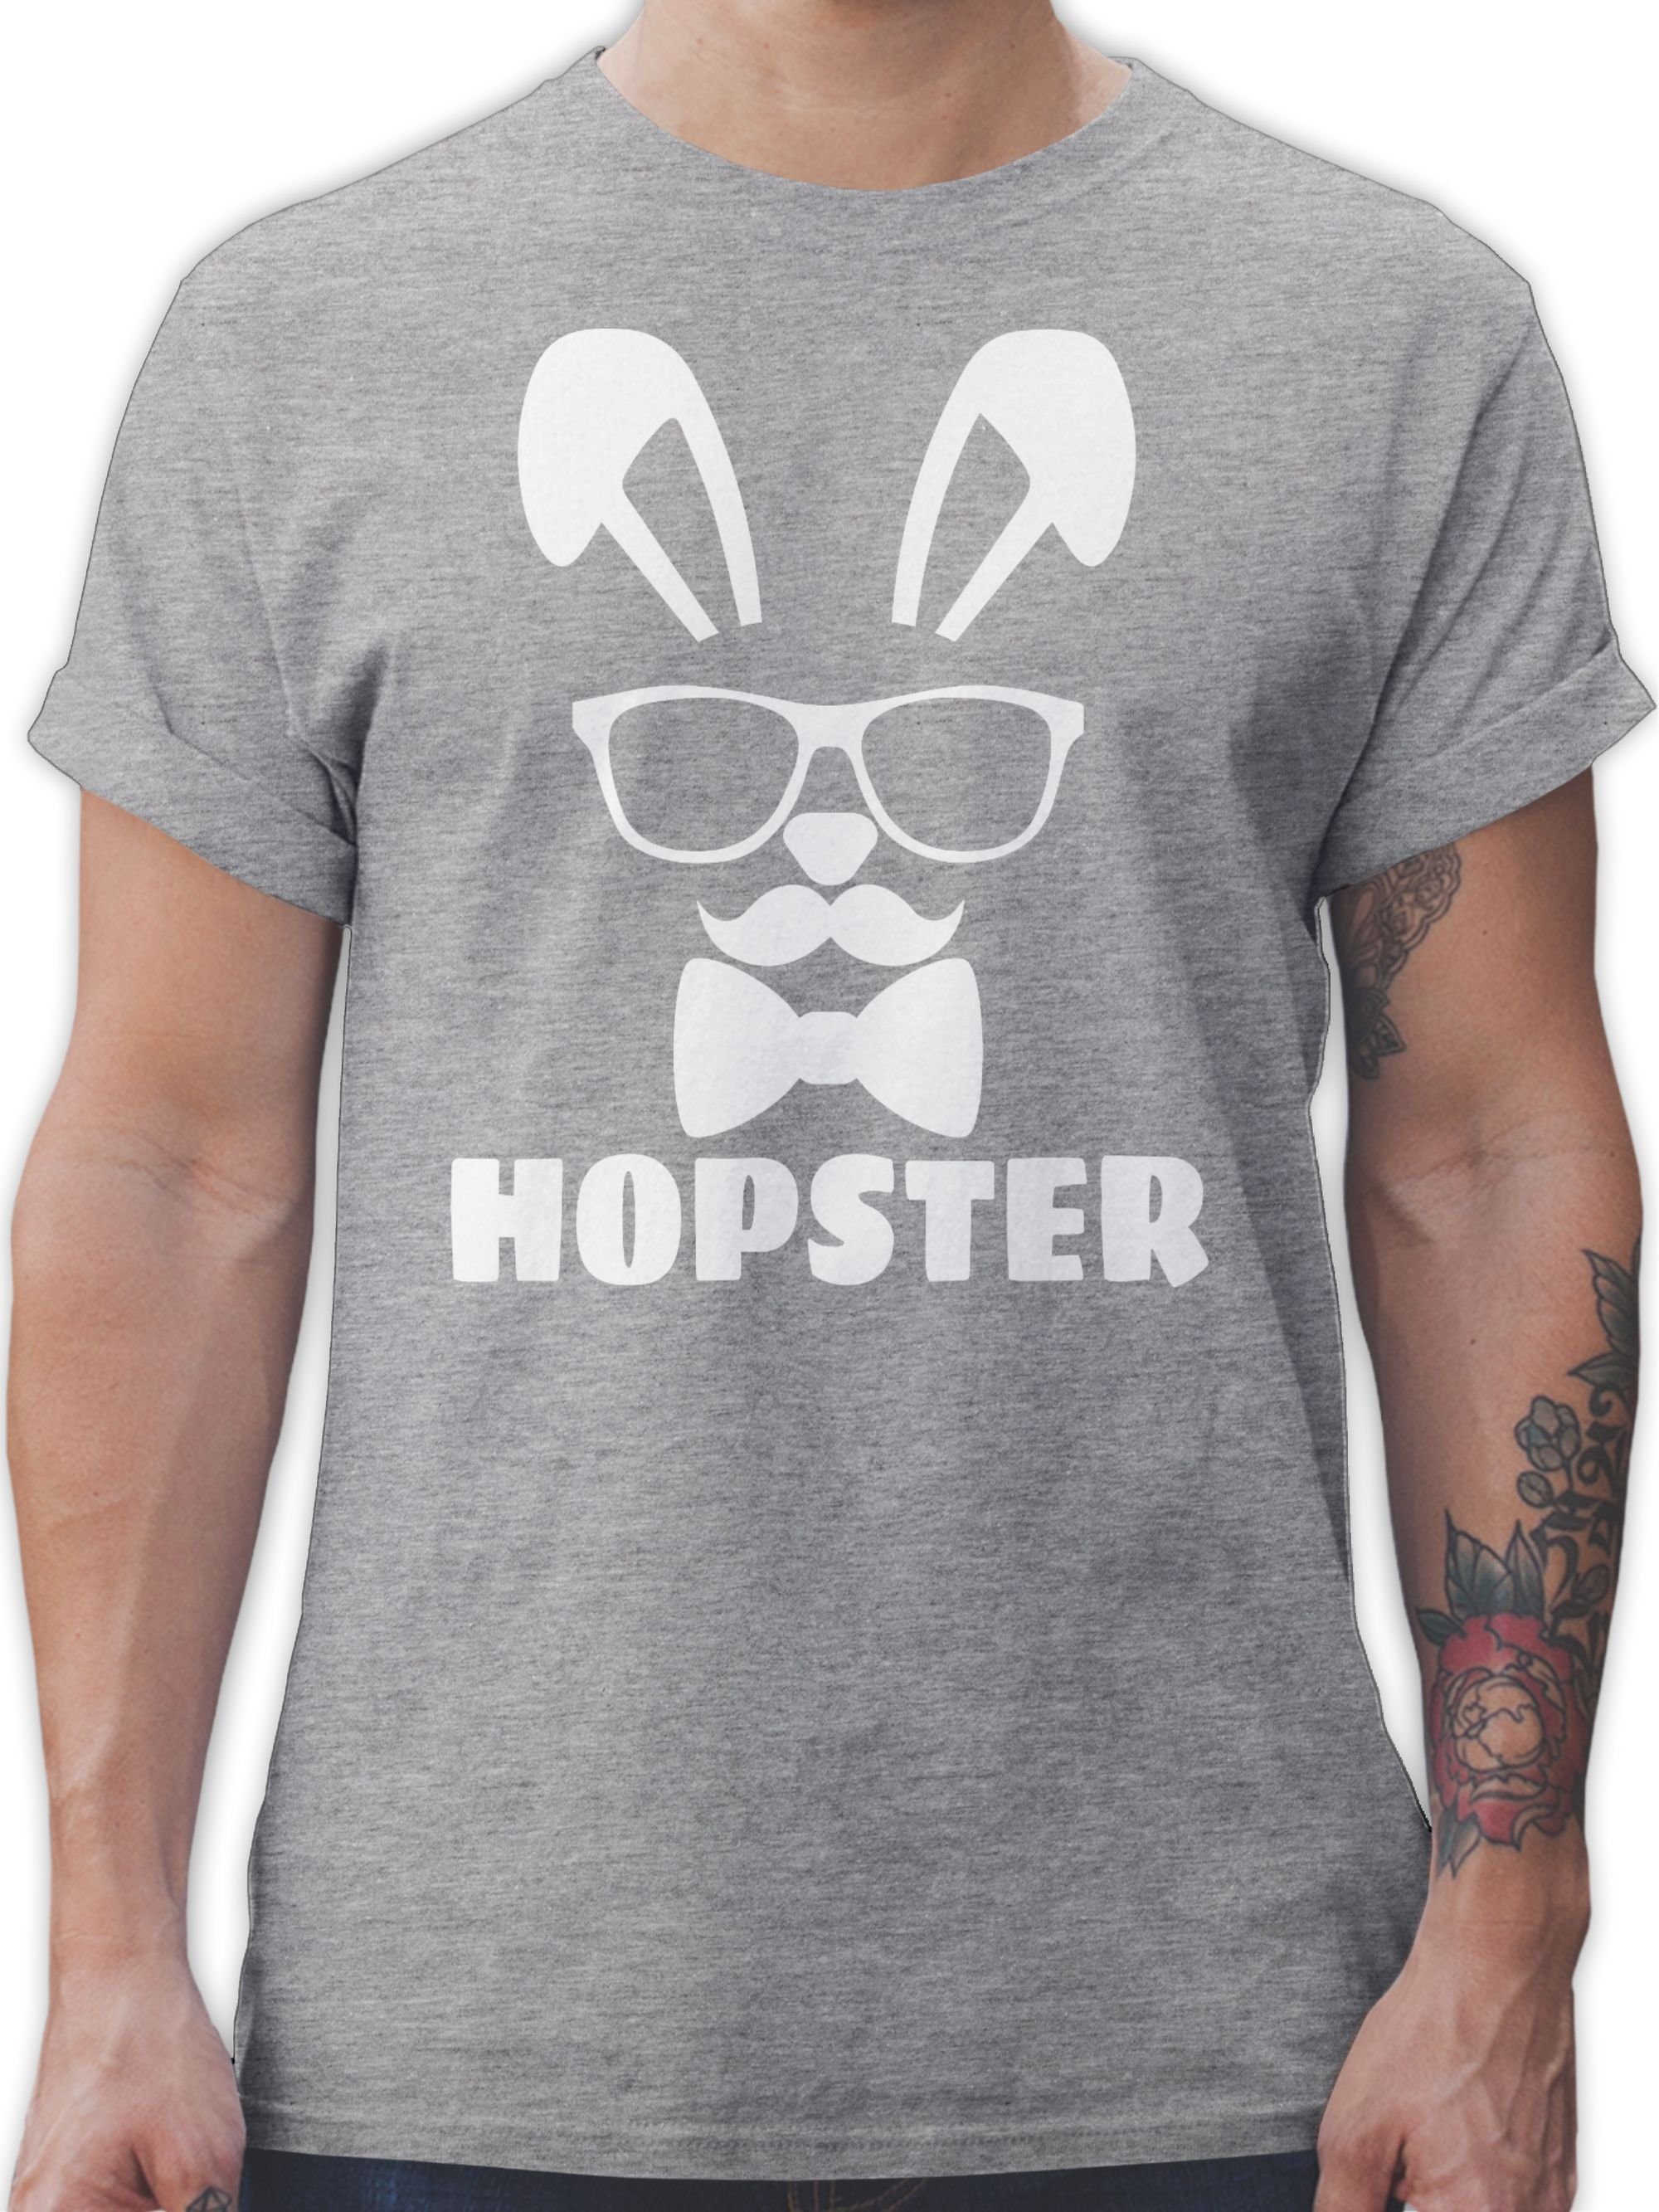 Shirtracer T-Shirt Hopster - weiß - Ostergeschenke - Herren Premium T-Shirt oder mit Osterhasen, Geschenke für Partner zu Ostern, kleine Ostergeschenke als Oster - Kleinigkeit 3 Grau meliert